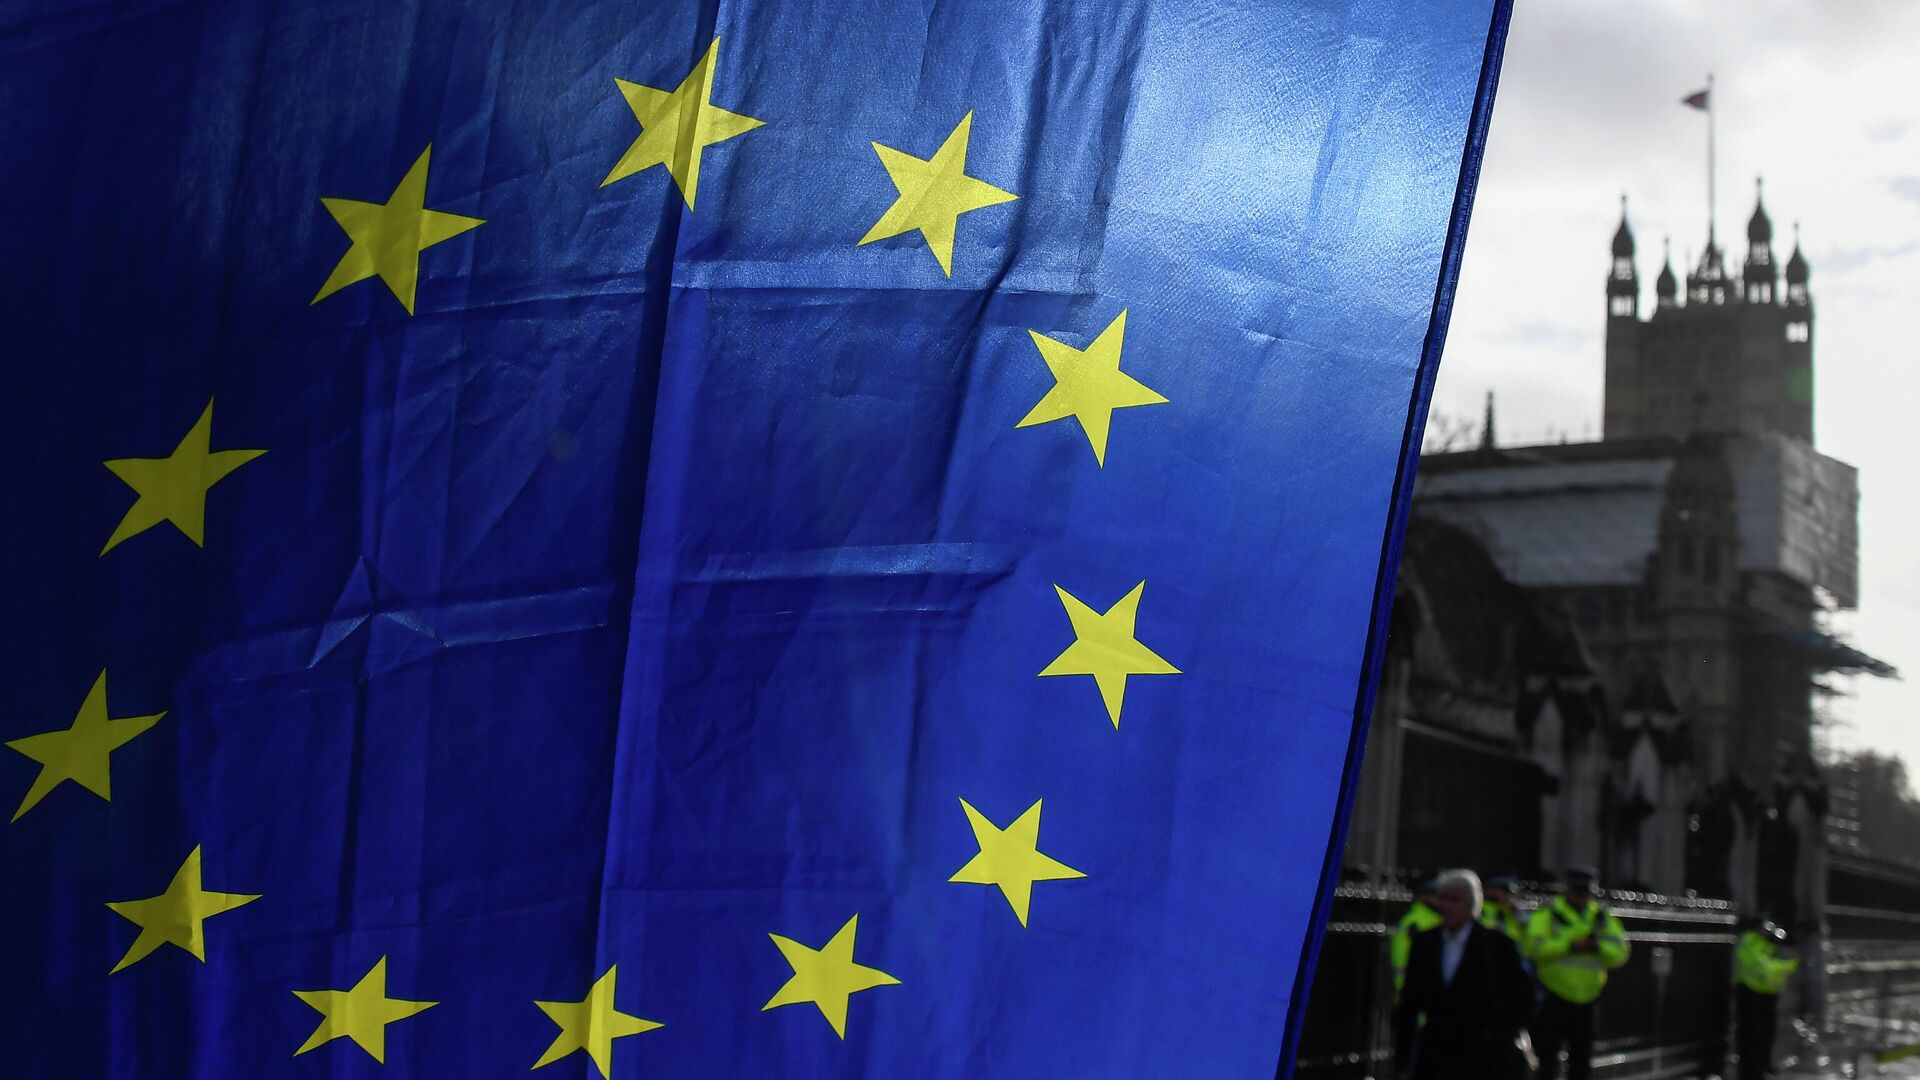 Флаг ЕС в руках демонстранта на фоне башни Виктория у Вестминстерского дворца в Лондоне. 14 декабря 2020 - РИА Новости, 1920, 30.01.2021